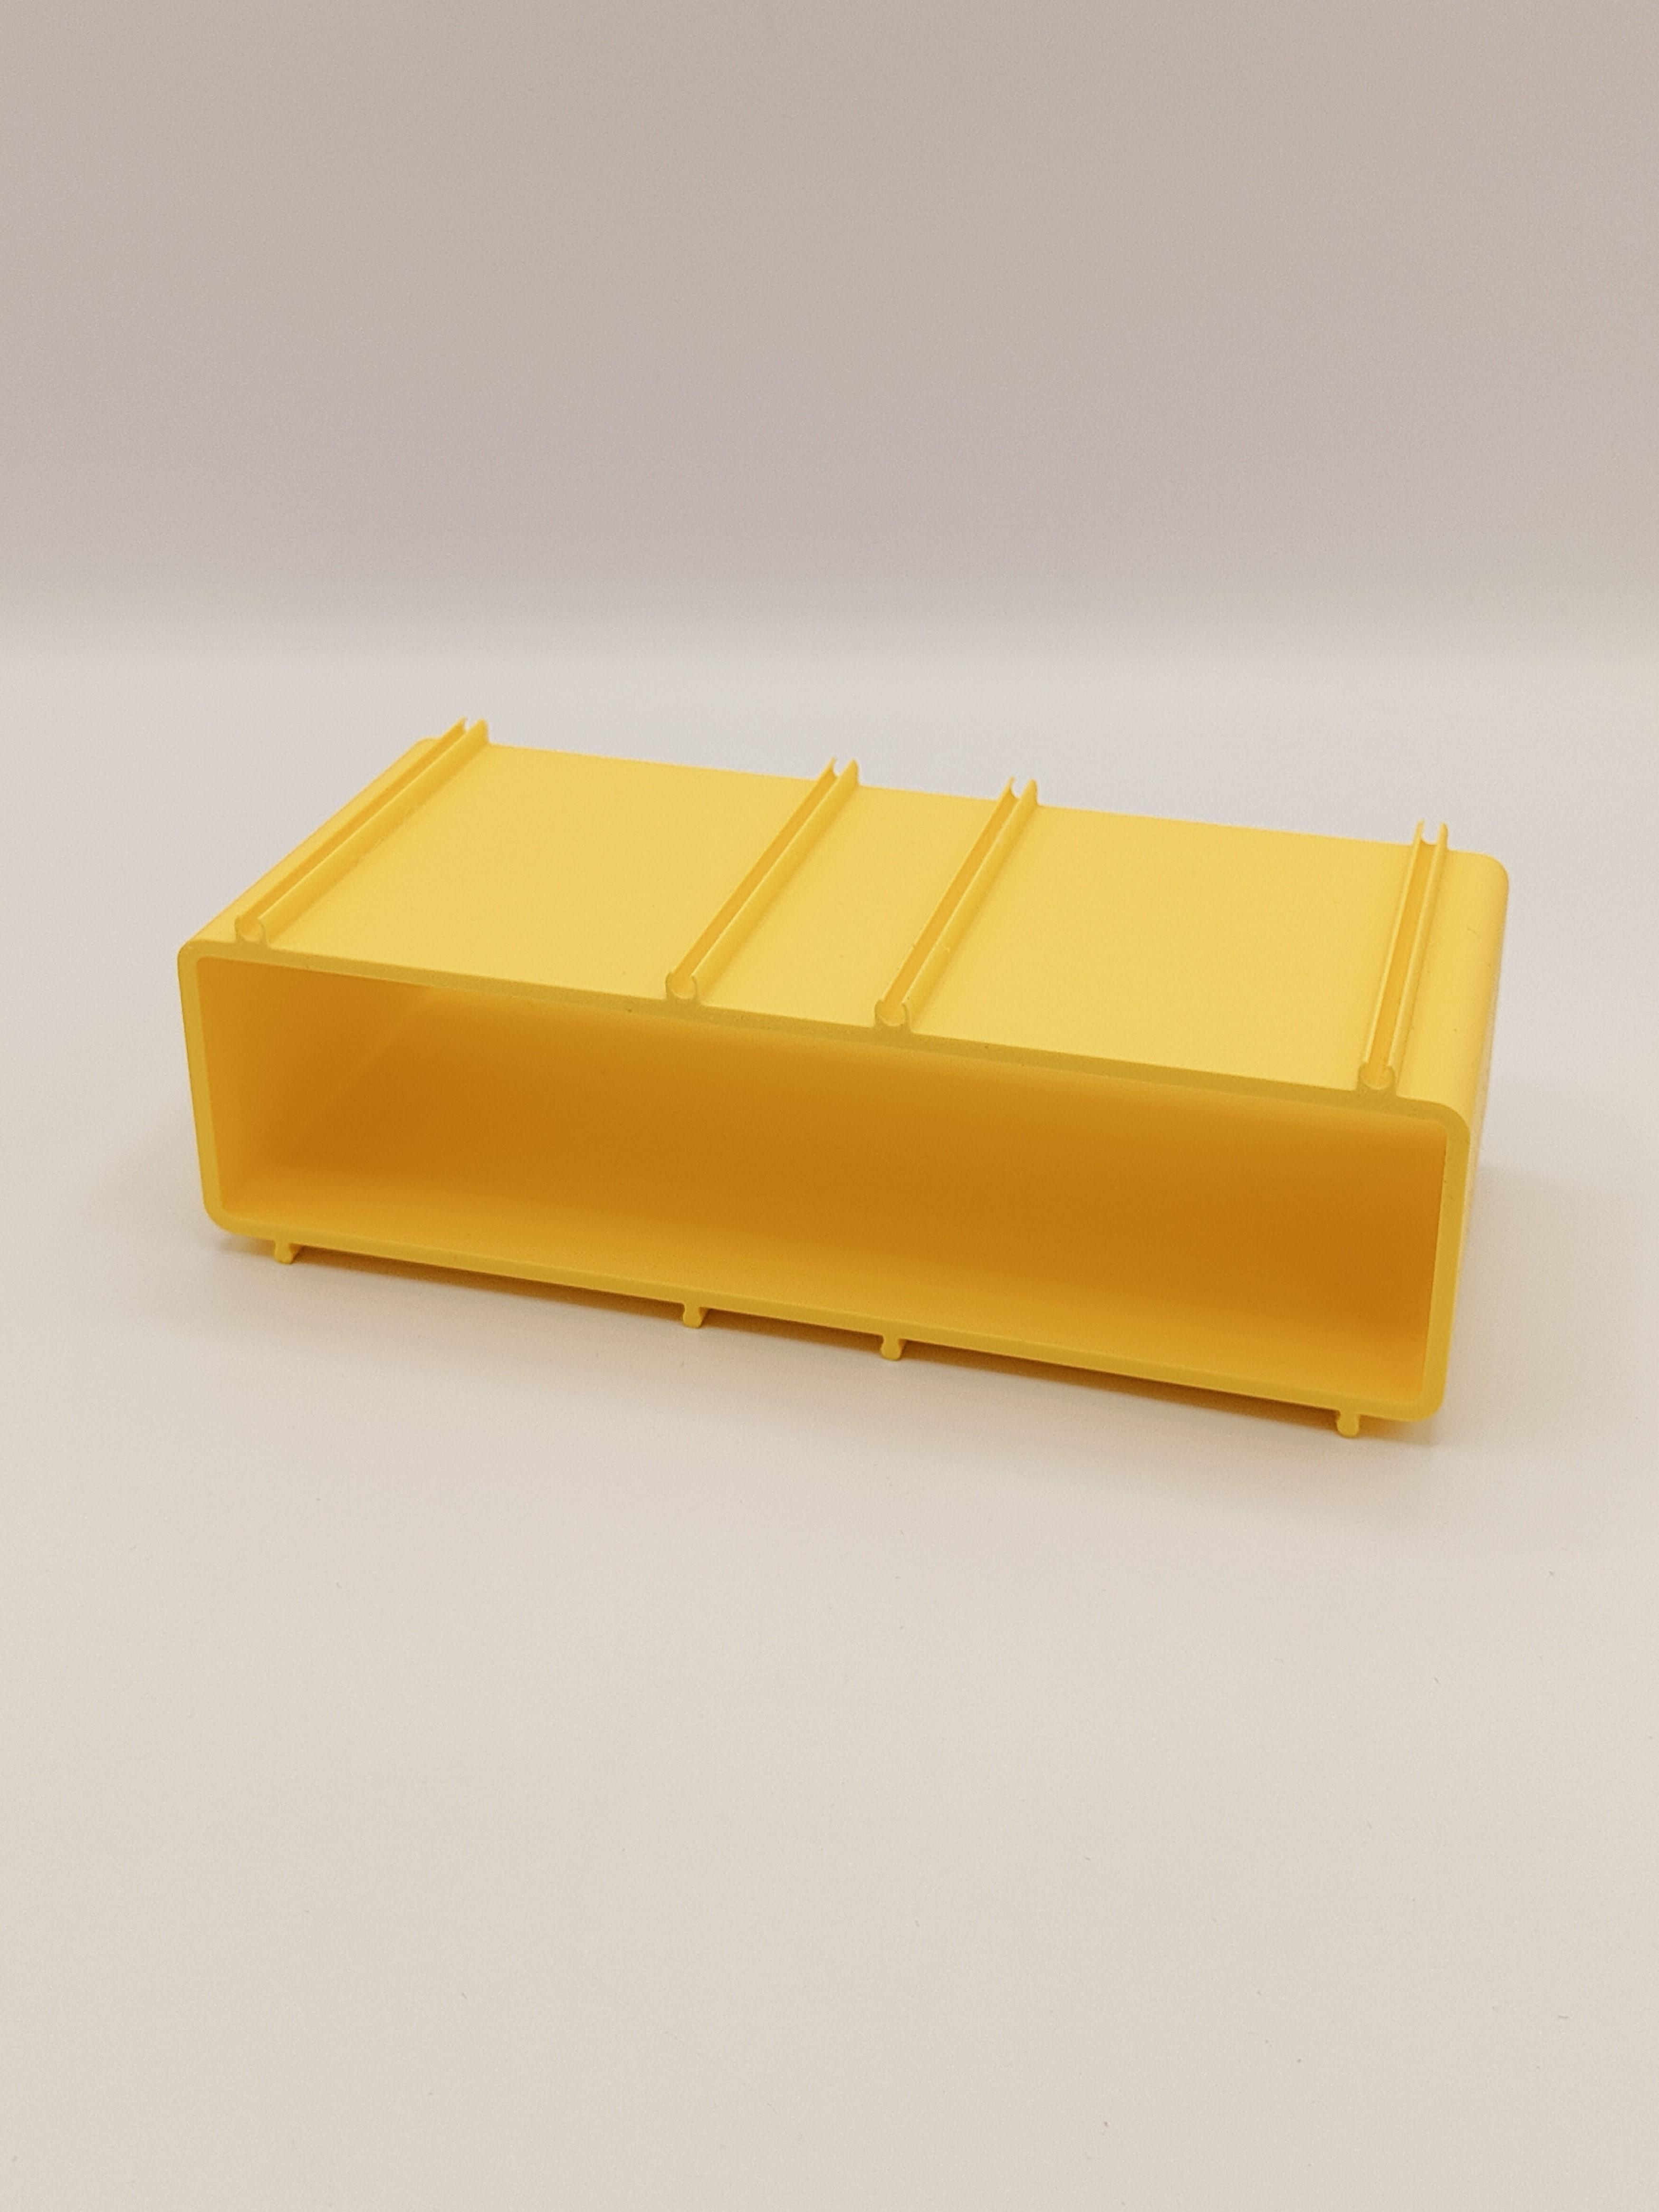 Swip Swap Shelf Mod 3 3d model